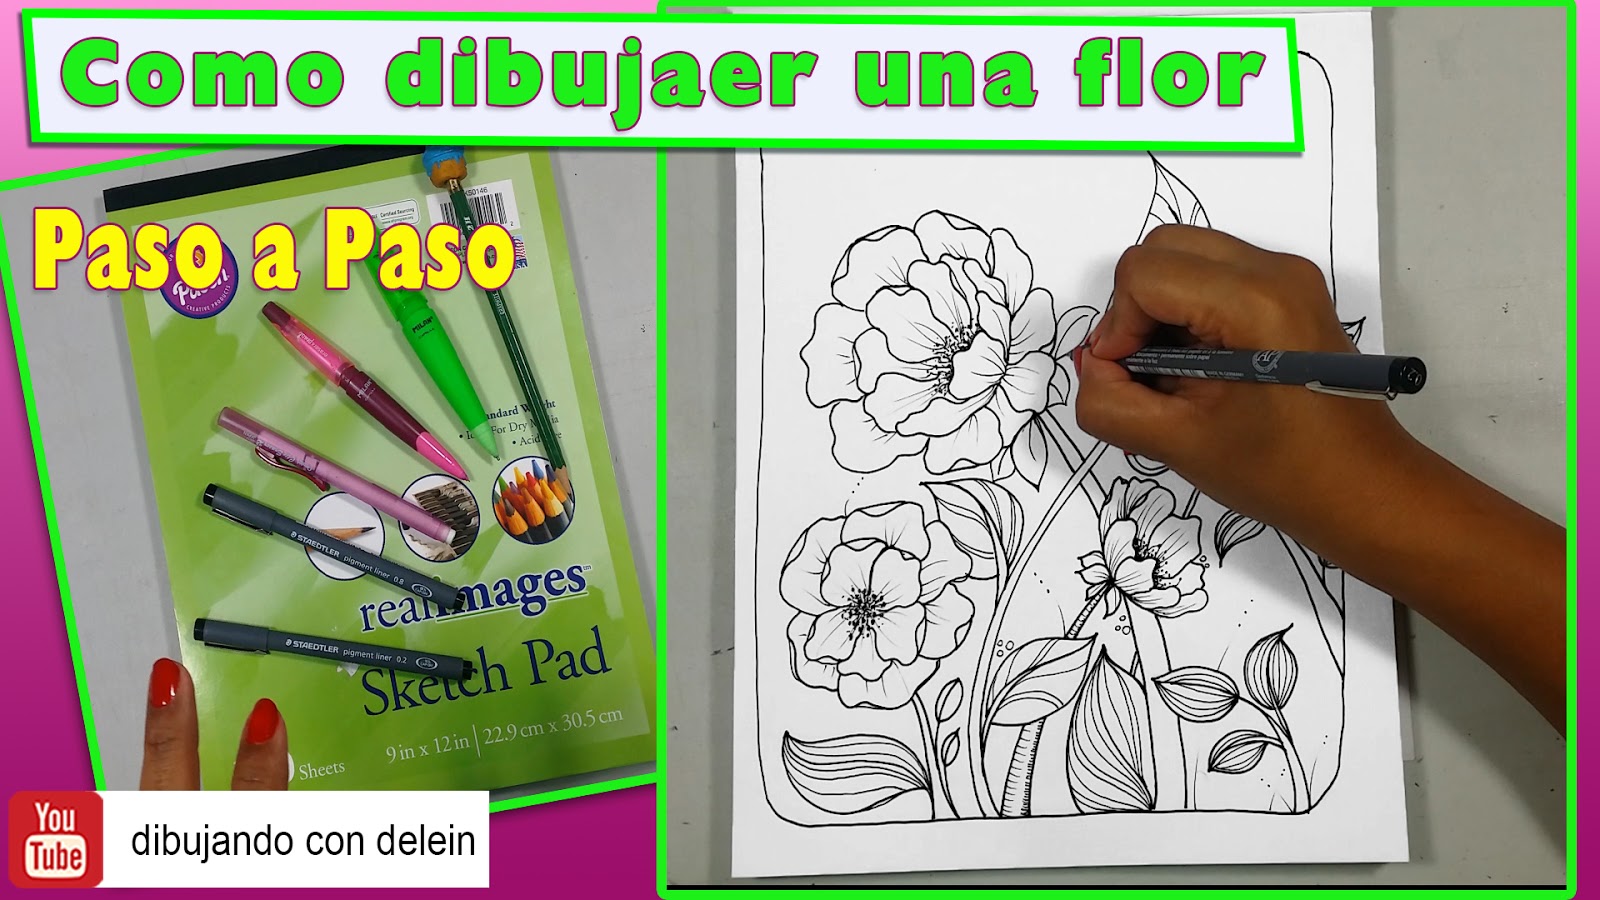 dibujando con delein: Como dibujar una flor paso a paso